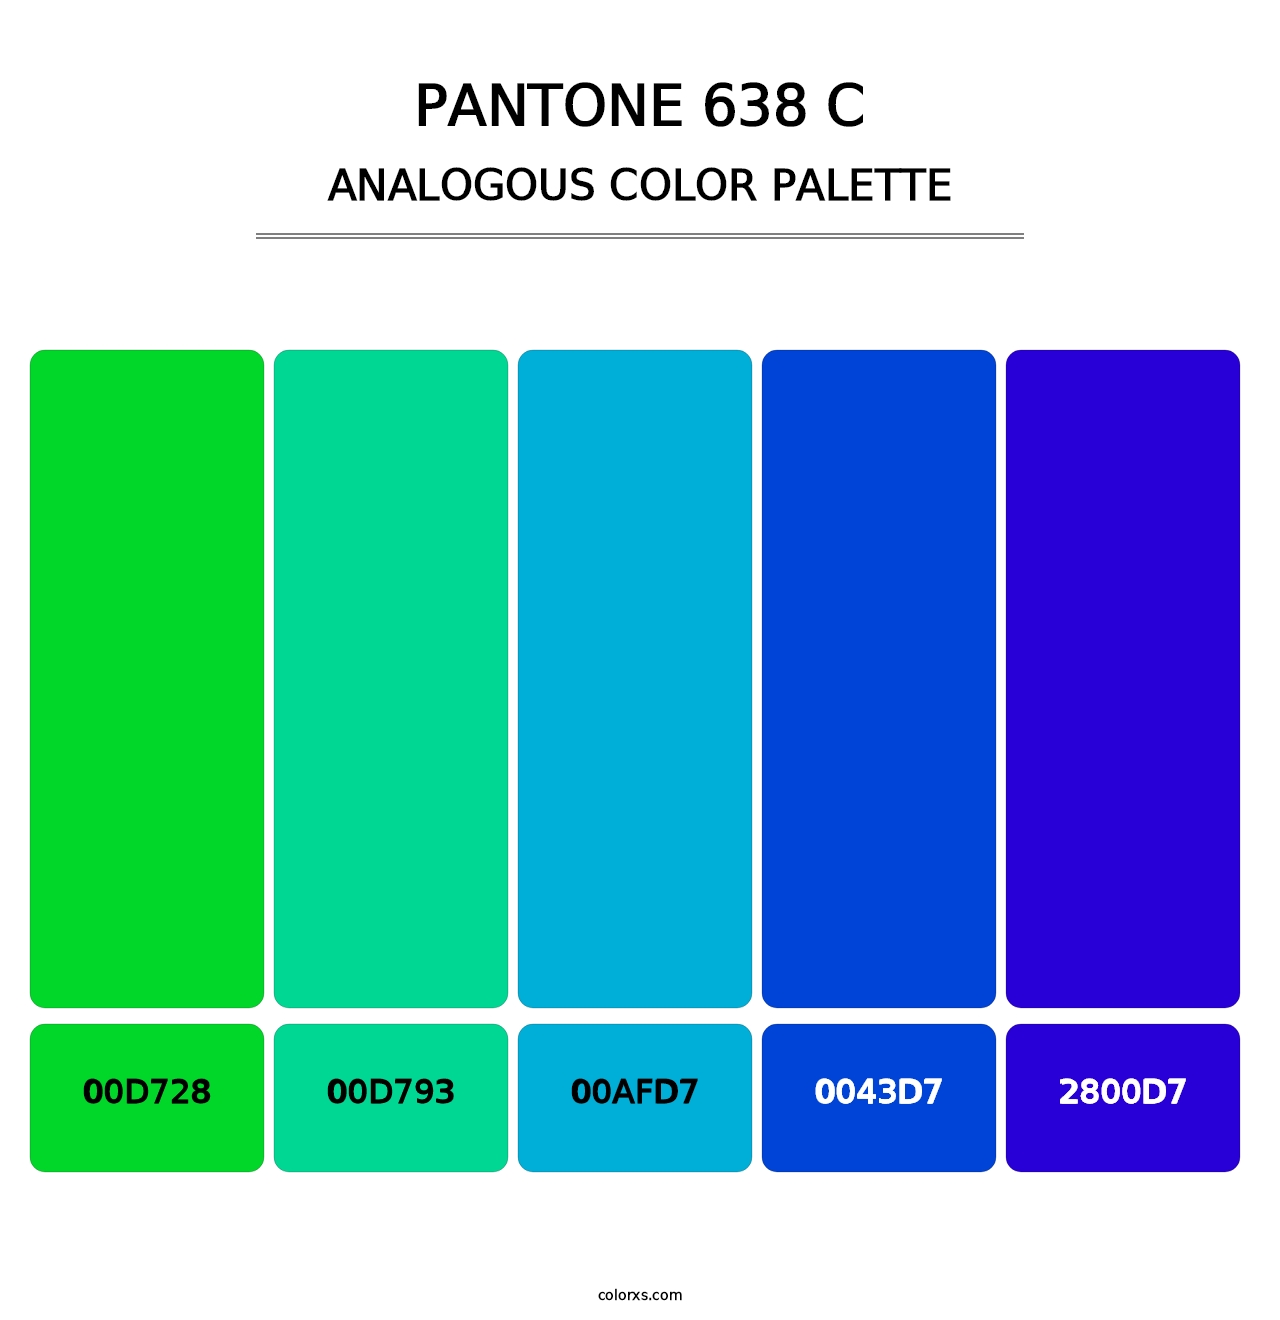 PANTONE 638 C - Analogous Color Palette